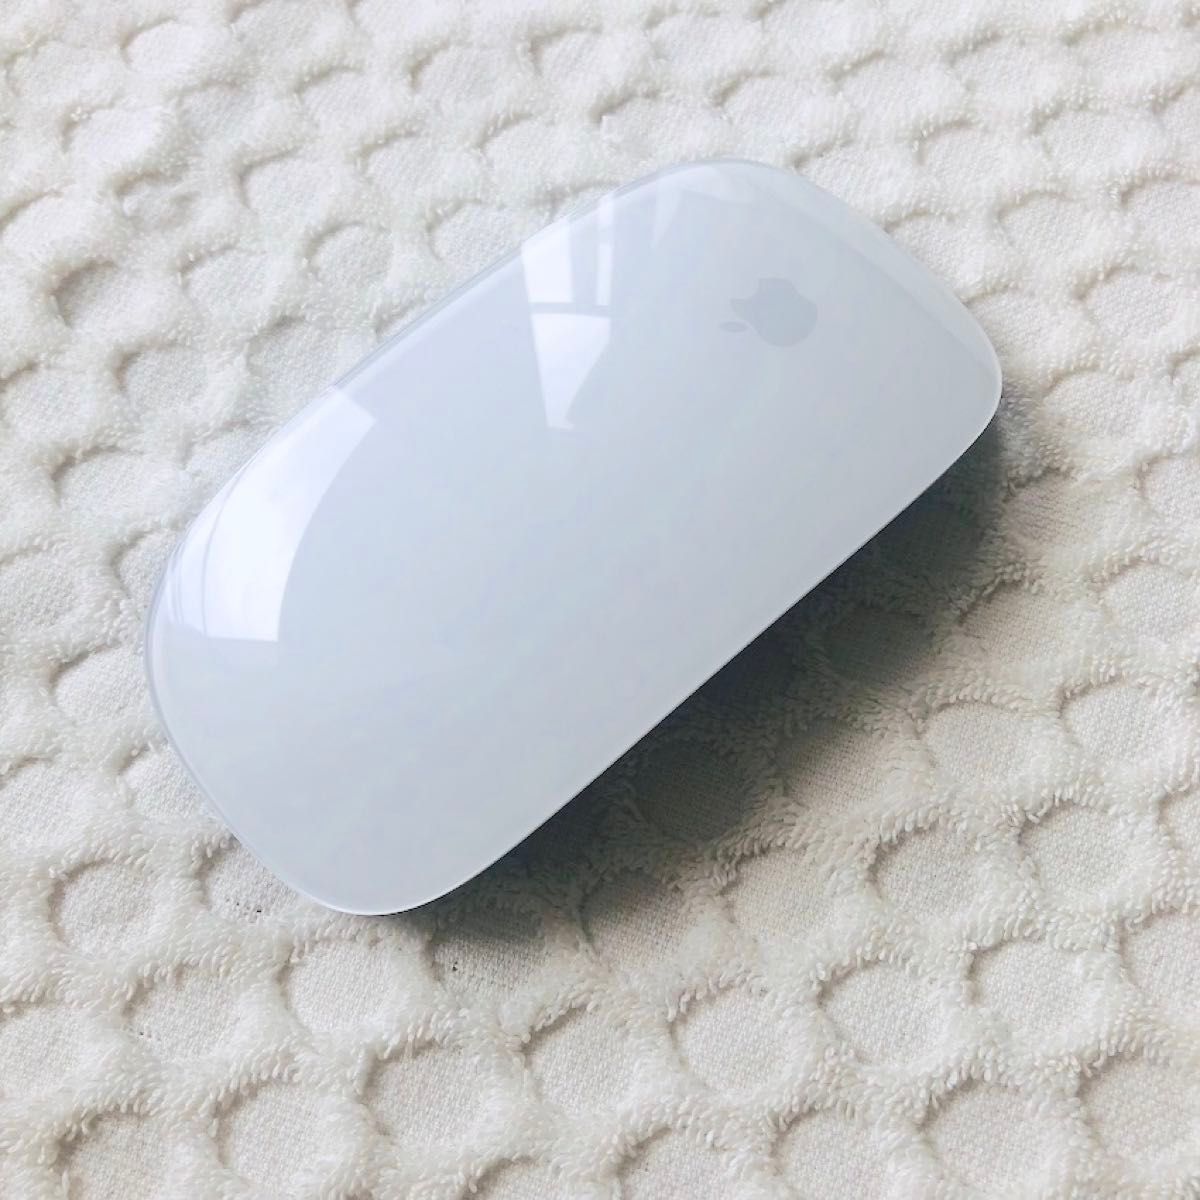 【超美品 / 新品にちかい】限定色モデル ブルー Apple Magic Mouse 